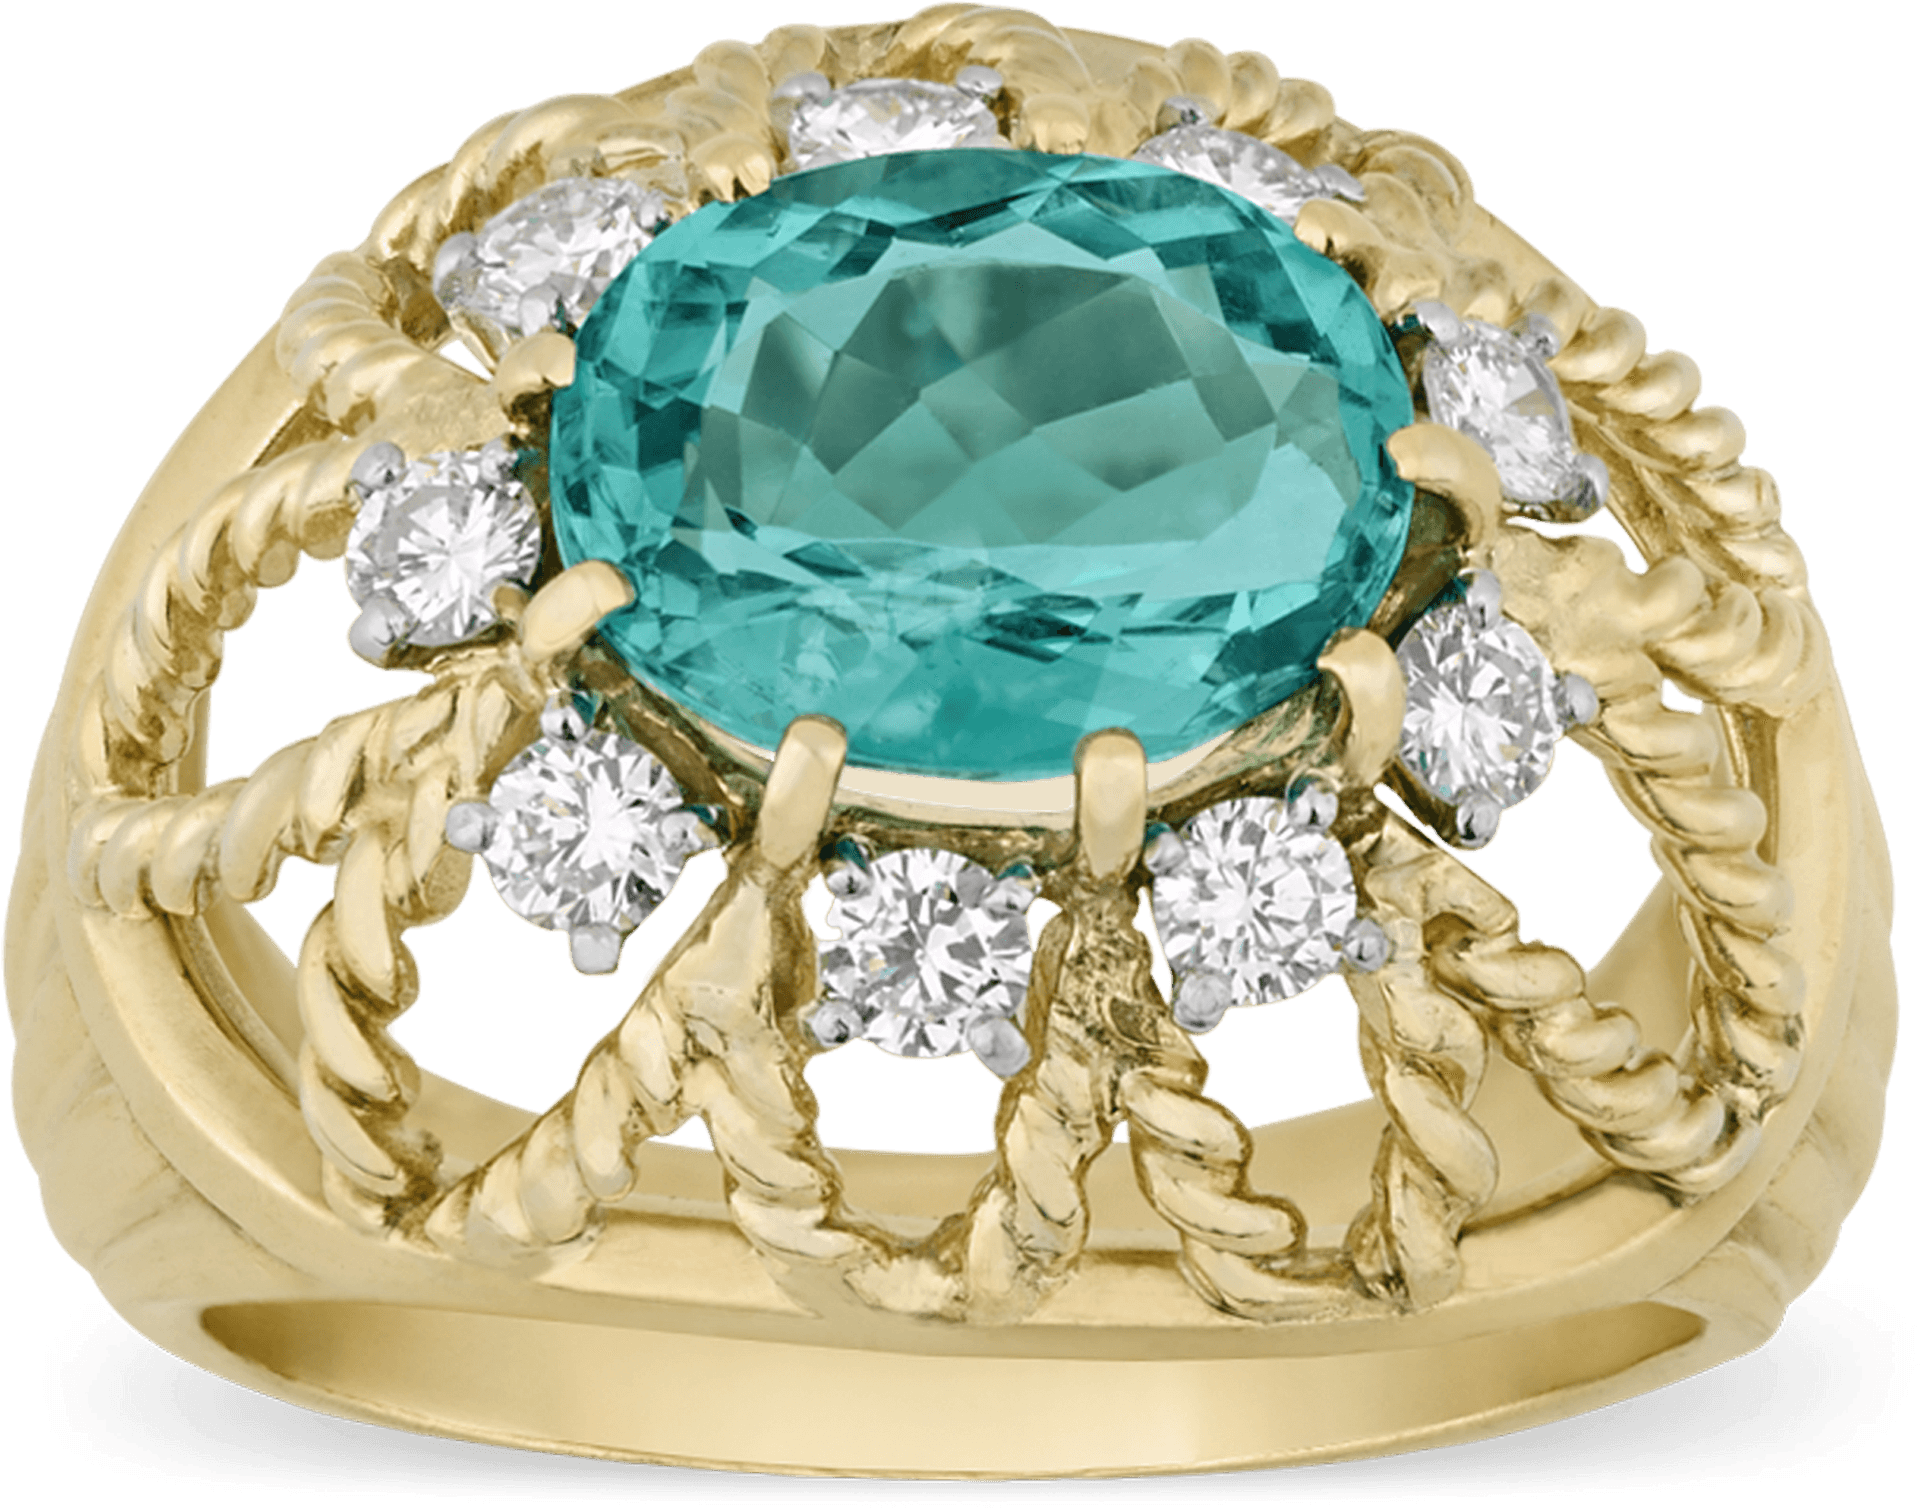 Elegant Teal Gemstone Ring Gold Setting PNG